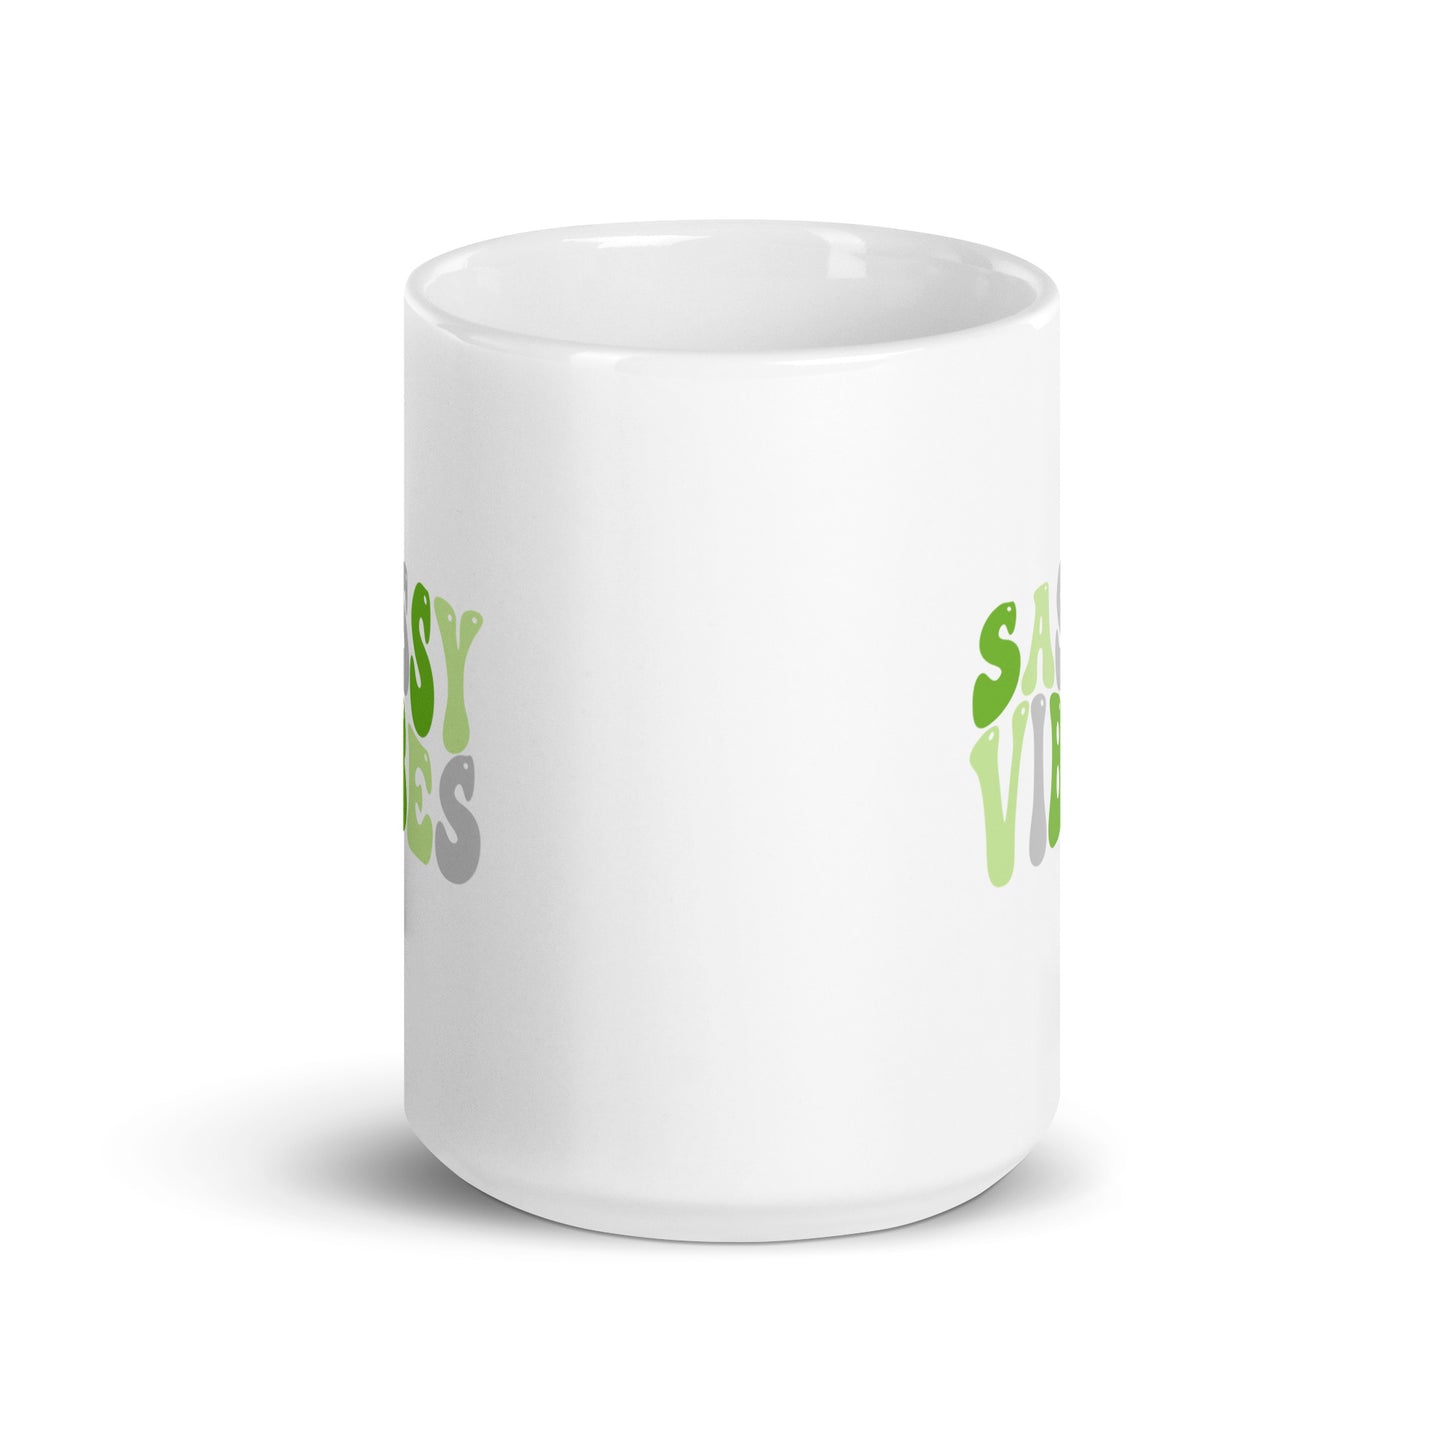 Team Green Ceramic Mug 15oz